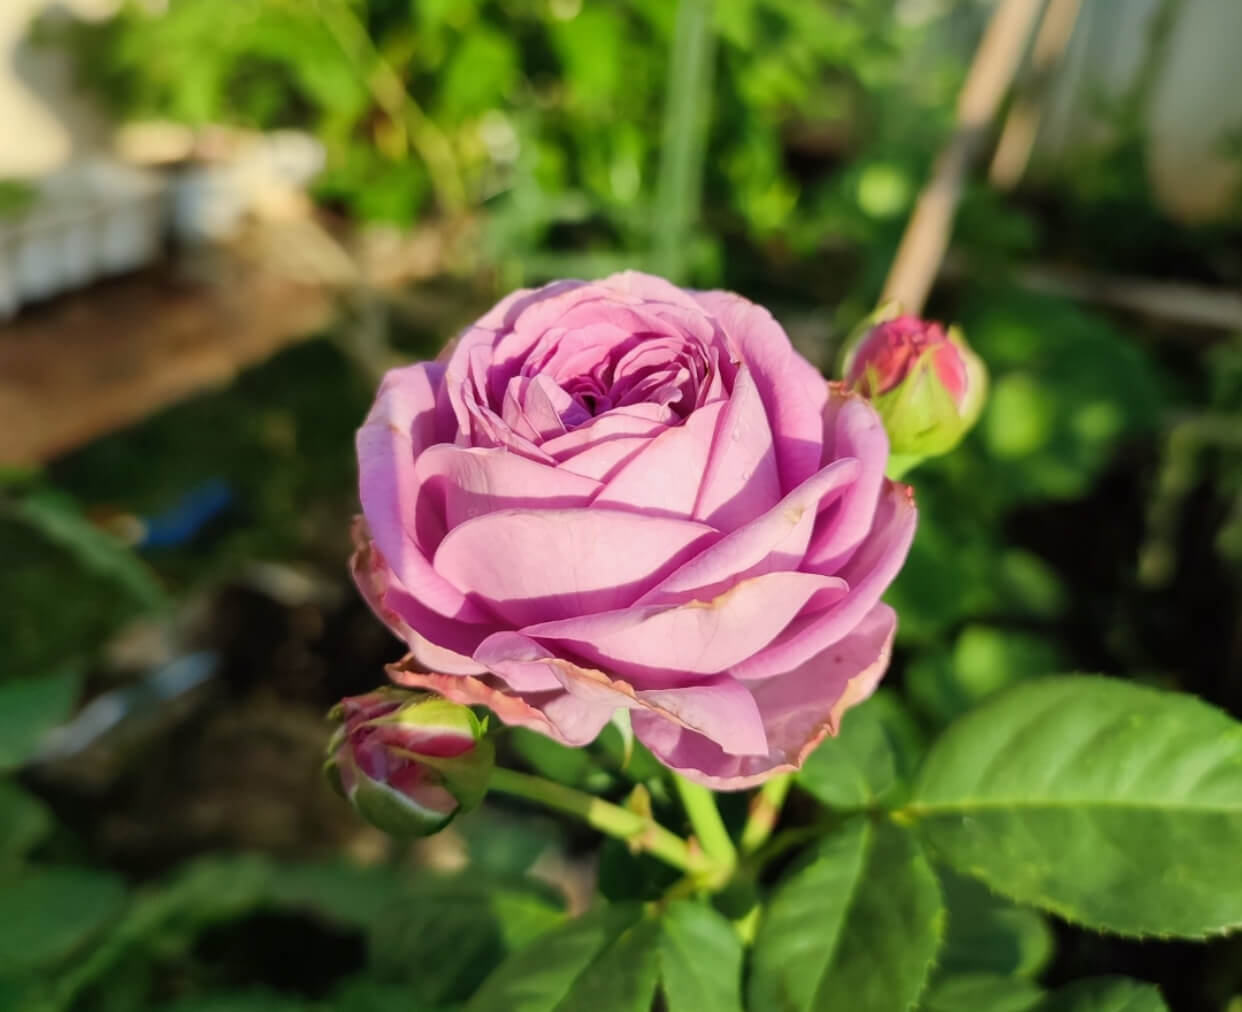 8 Tips Mudah Merawat Bunga Mawar, Jangan Lupa Ranting Keringnya Dipangkas Teratur